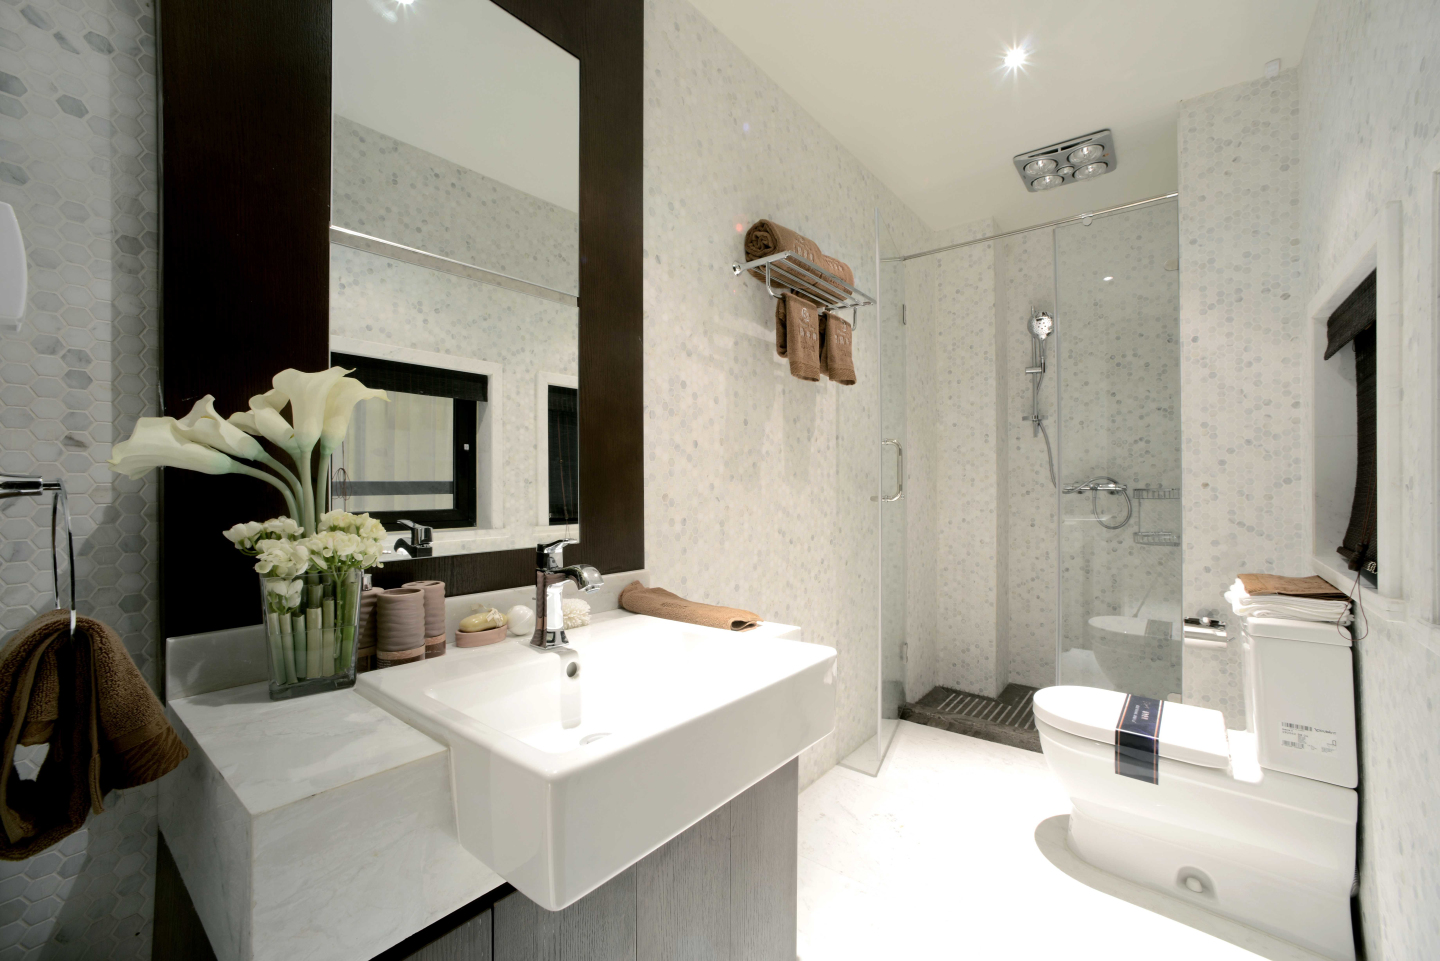 卫浴空间以白色为主，淋浴房做了干湿分离设计，彰显出设计美学。